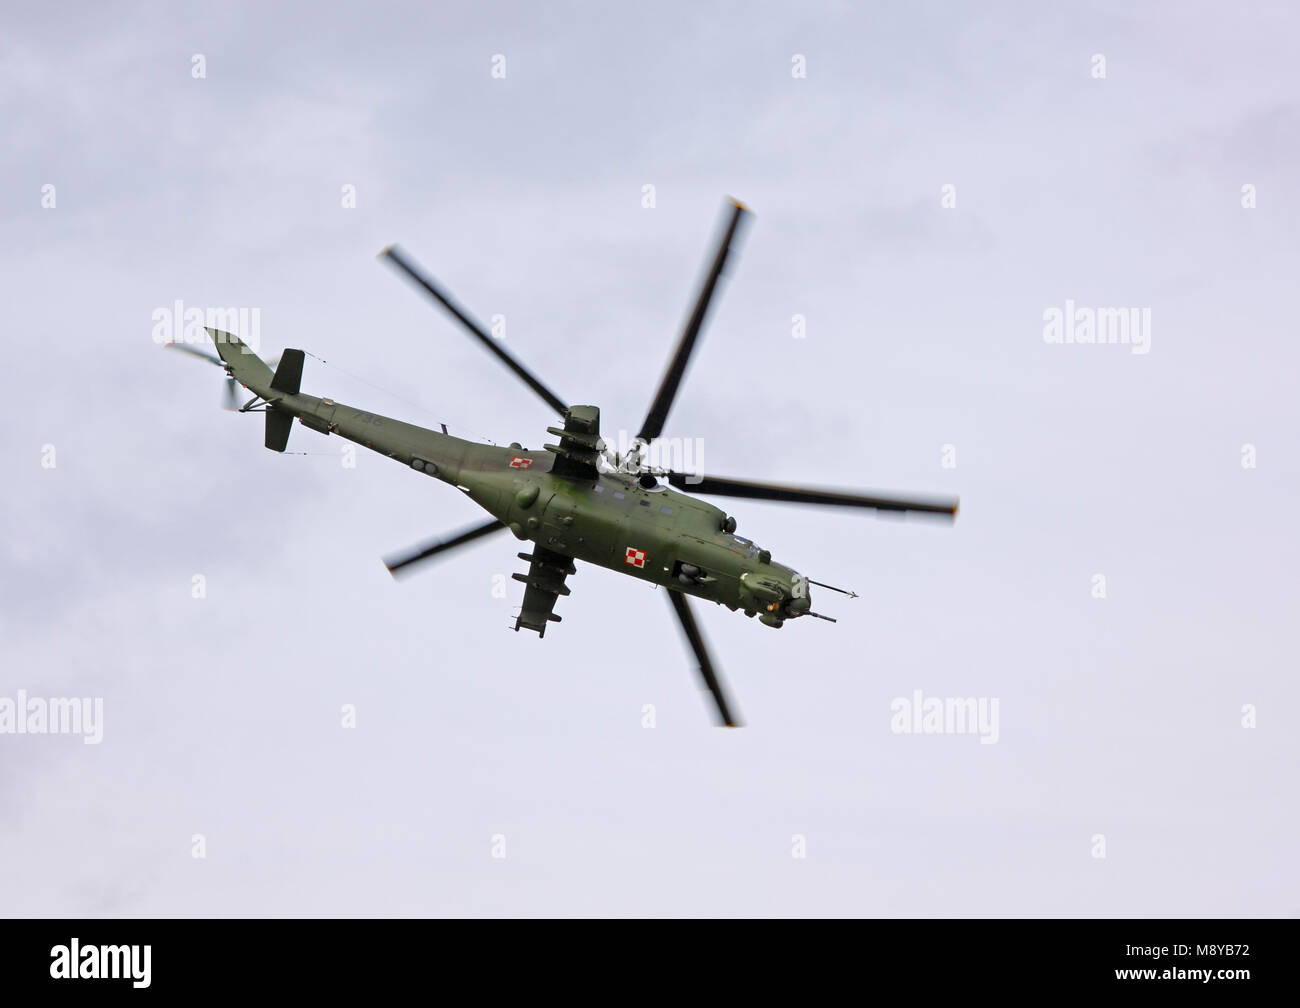 Aux commandes de l'Armée de l'Air polonaise Mil Mi-24D Hind-D pendant le spectacle aérien international à l'occasion du 90e anniversaire de l'Académie de l'Armée de l'Air polonaise. Banque D'Images